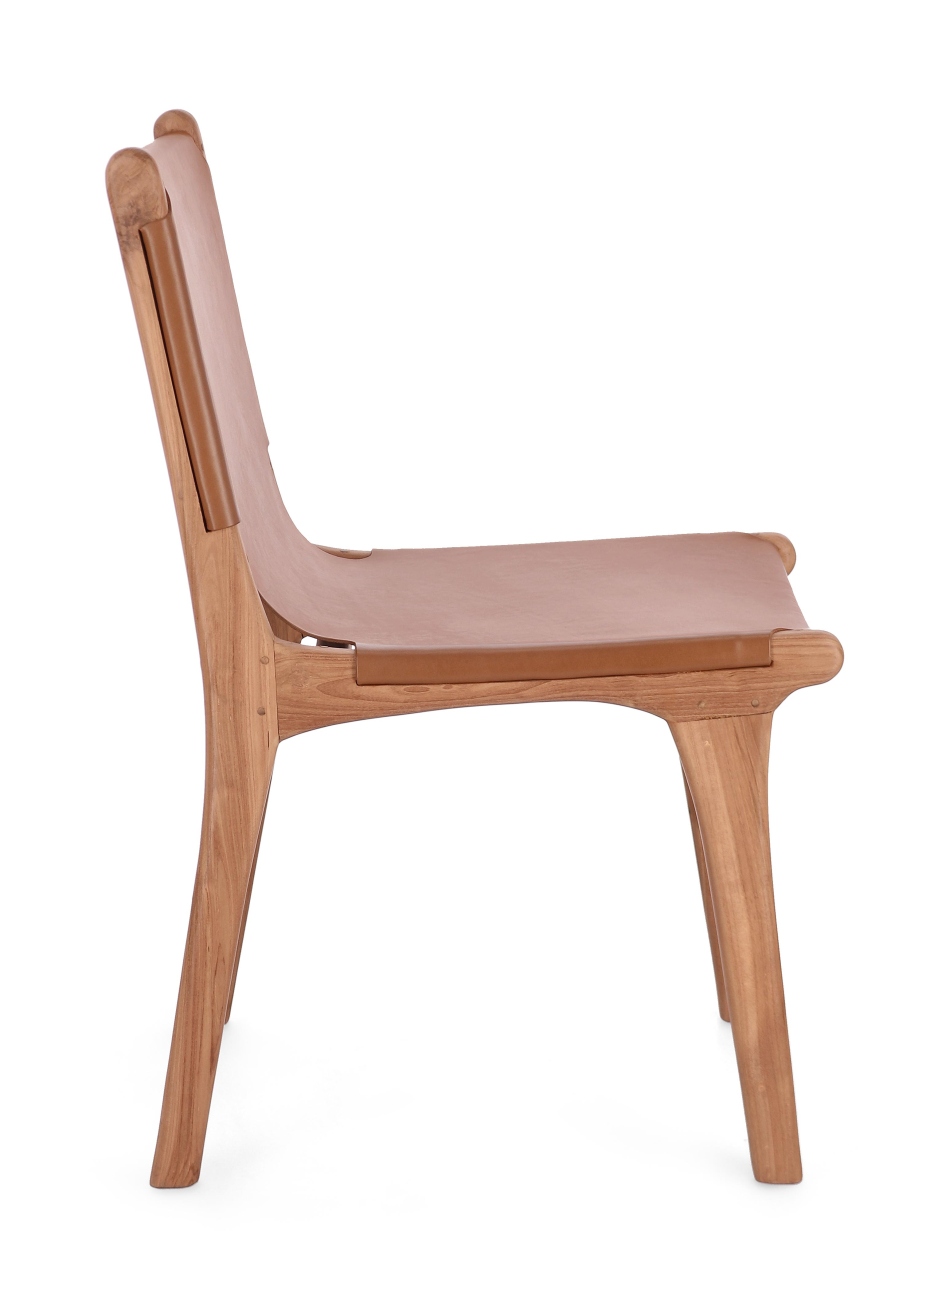 Der Esszimmerstuhl Eugenie überzeugt mit seinem modernen Stil. Gefertigt wurde er aus Leder, welches einen Cognac Farbton besitzt. Das Gestell ist aus Teakholz und hat eine natürliche Farbe. Der Stuhl besitzt eine Sitzhöhe von 45 cm.